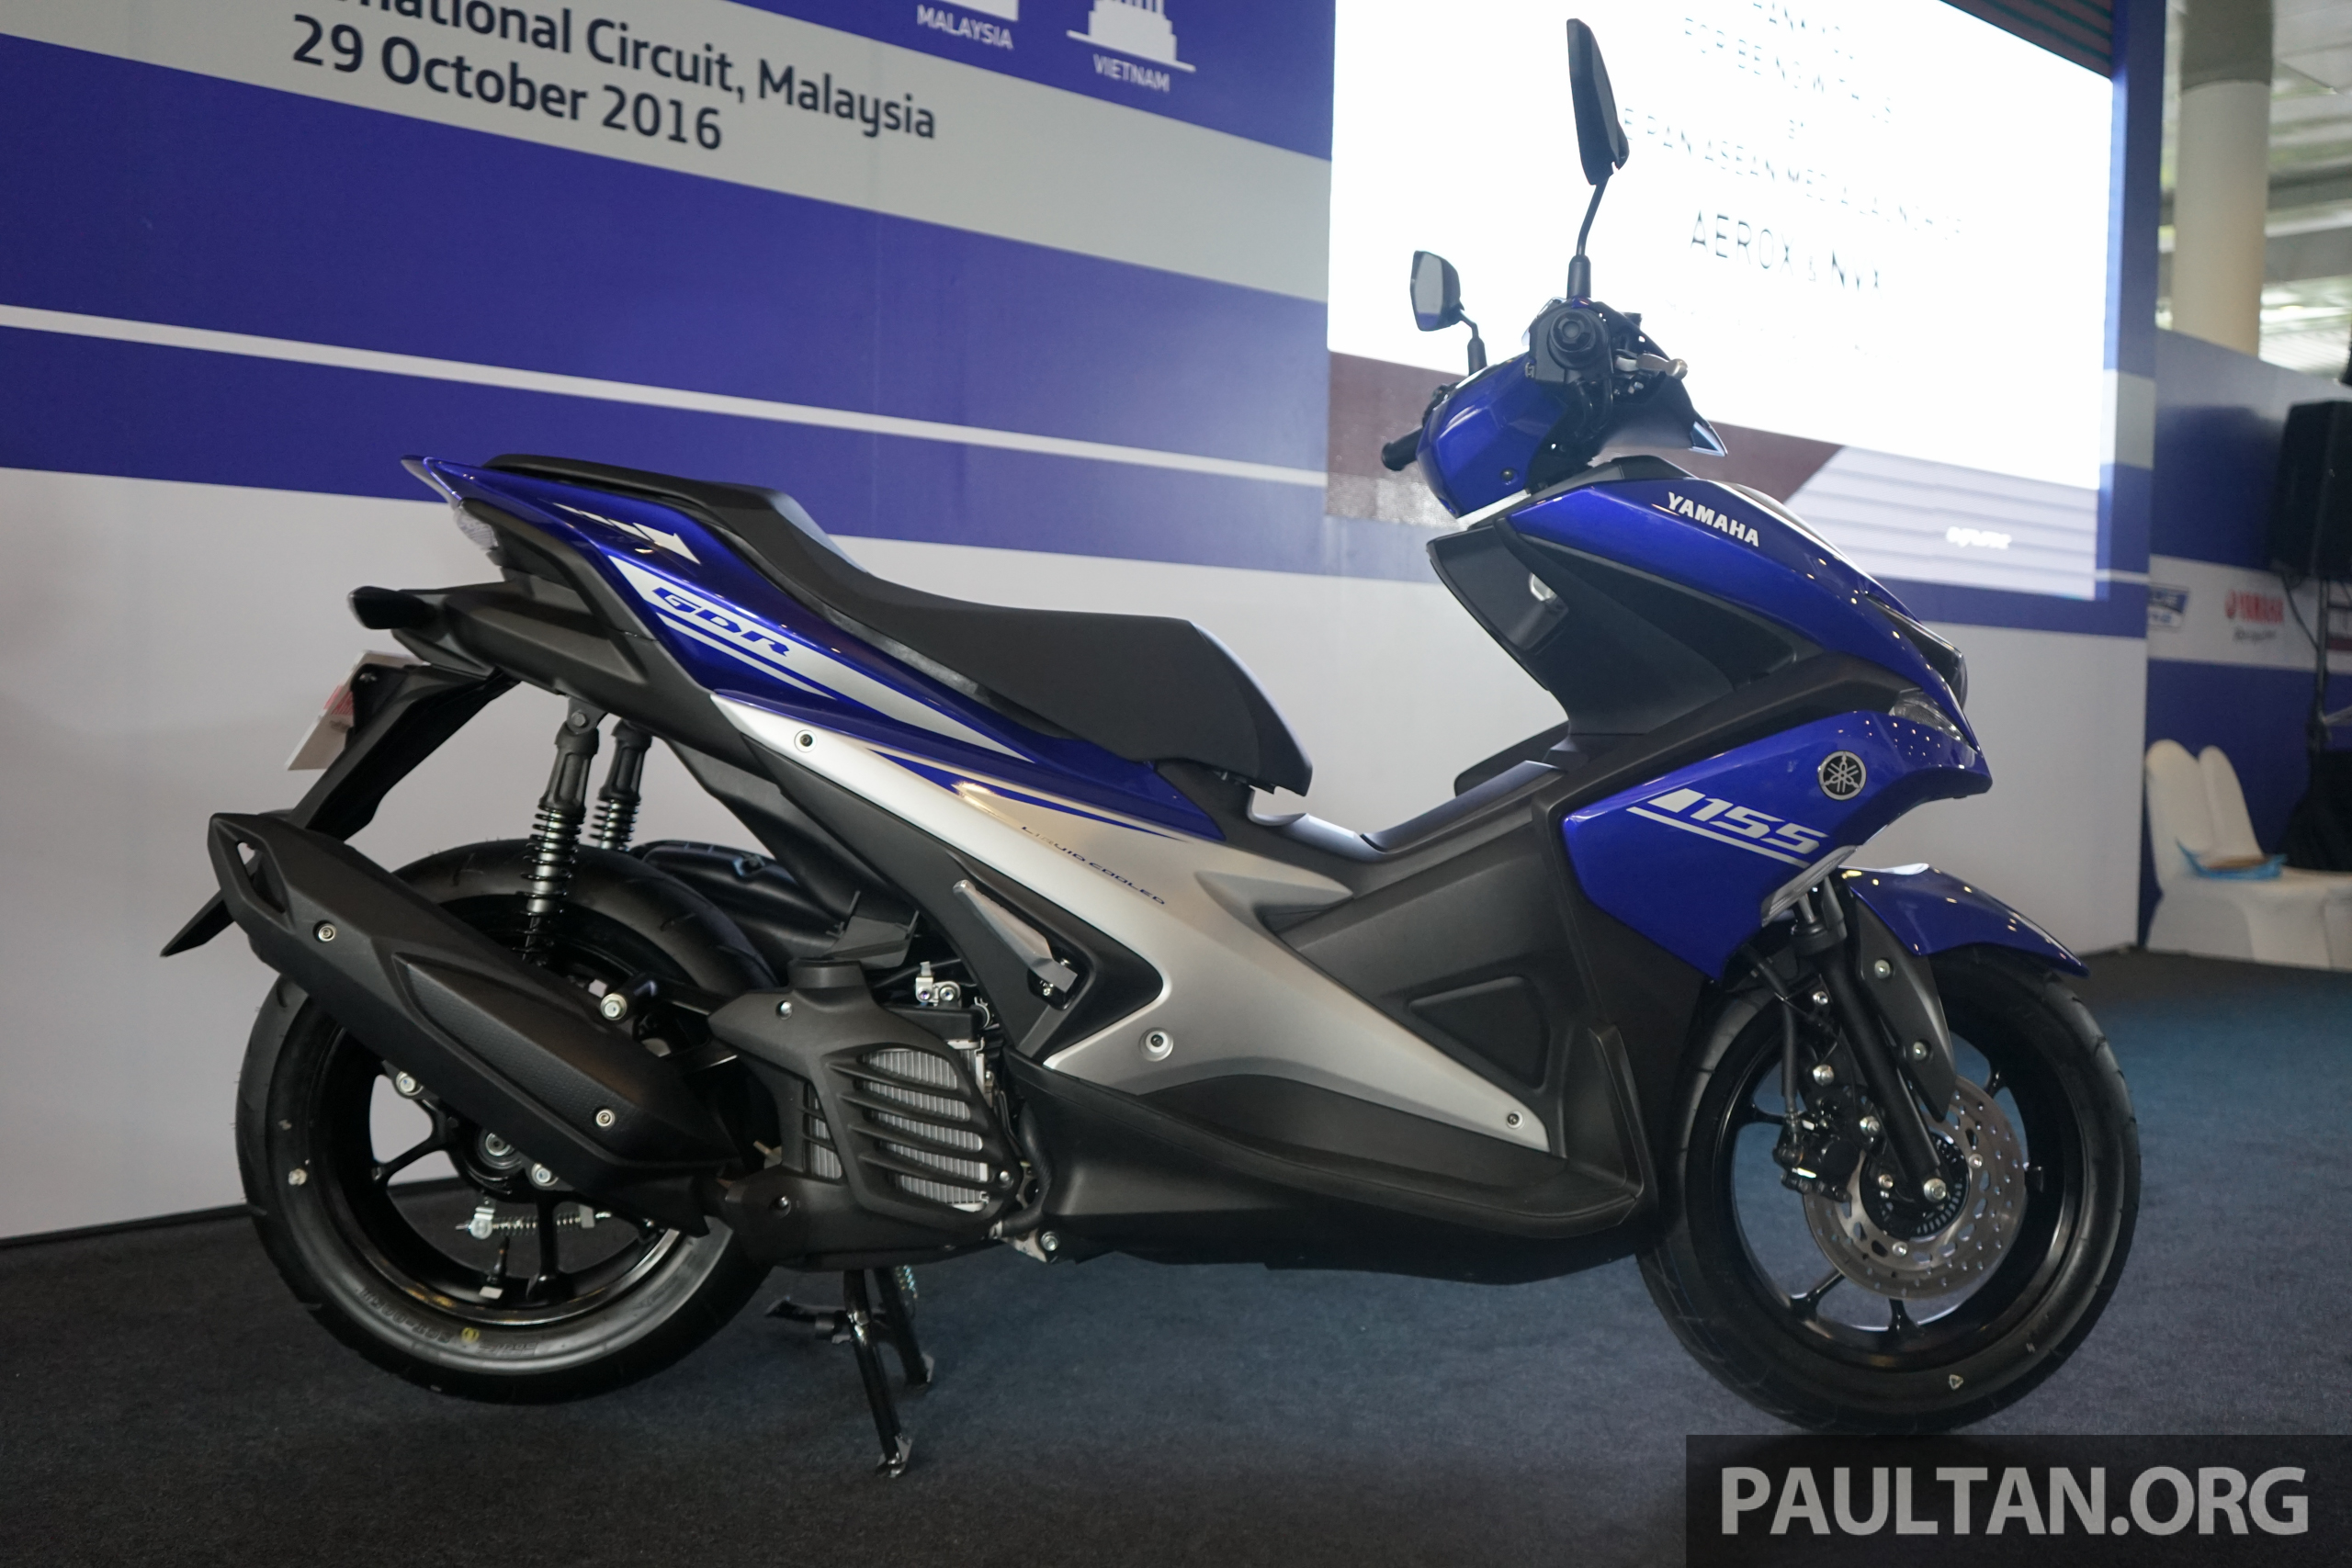 2017 Yamaha NVX/Aerox ASEAN launch at Sepang Image 571594